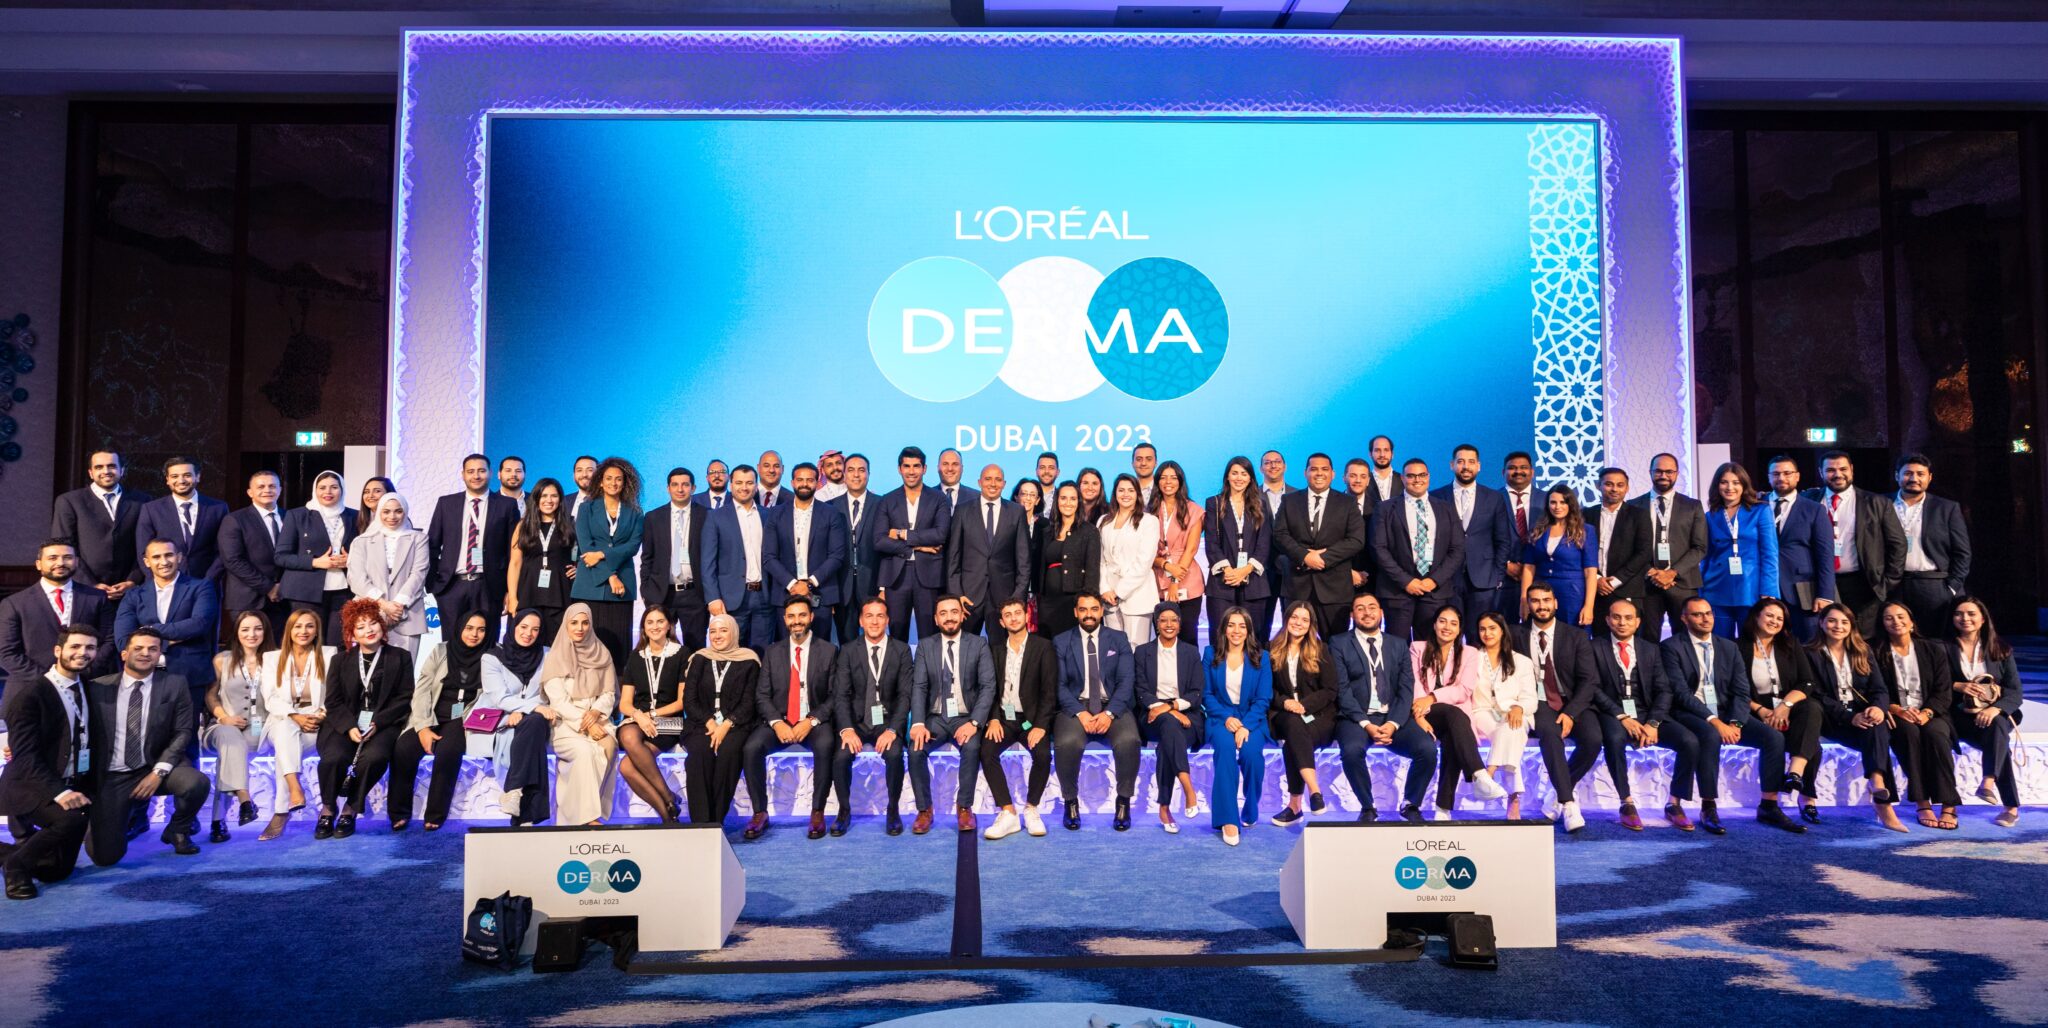 الإحتفال بالنسخة الرابعة لمؤتمر "لوريال ديرما" في دبي - الإمارات العربية المتحدة